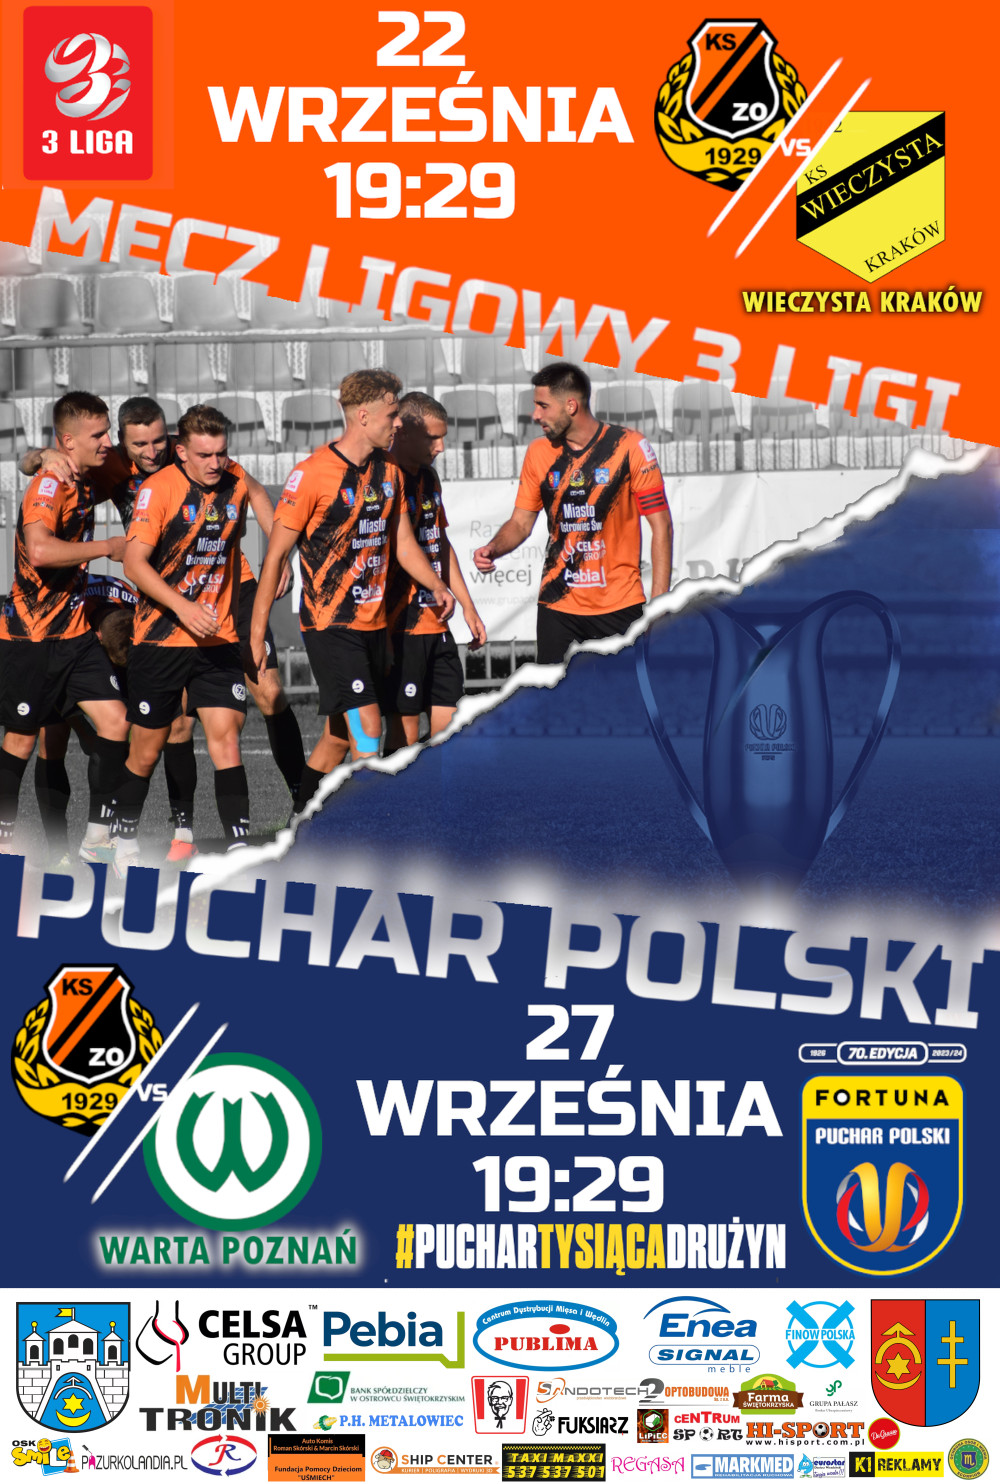 Plakat promujący mecz ligowy z Wieczystą Kraków i mecz Pucharu Polski z Wartą Poznań.